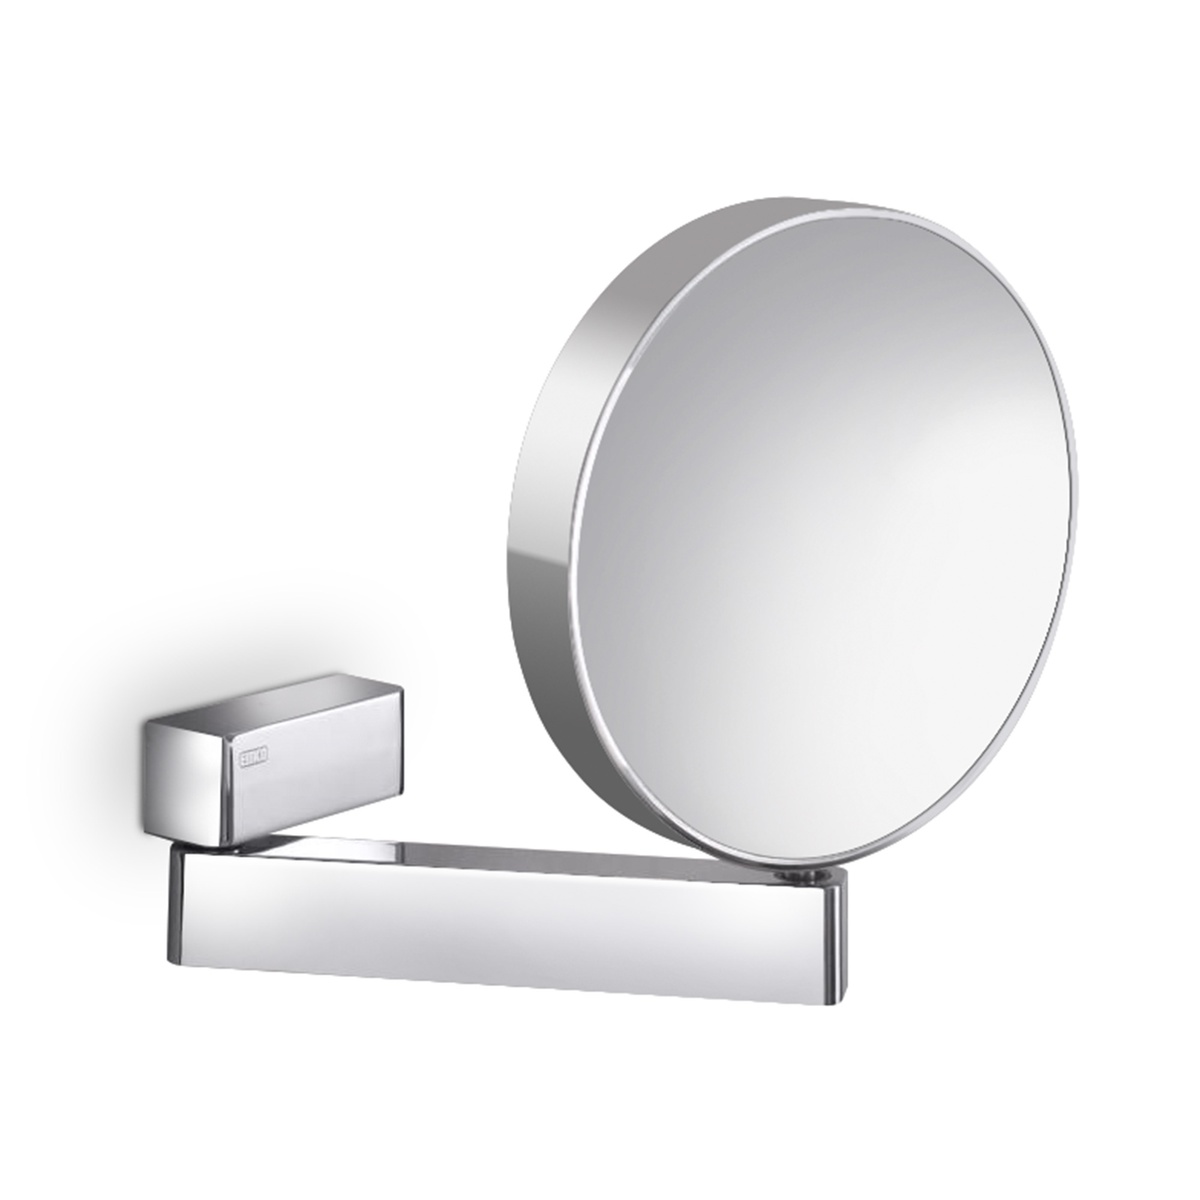 Косметическое зеркало EMCO Spiegel 1095 001 17 круглое подвесное металлическое хром